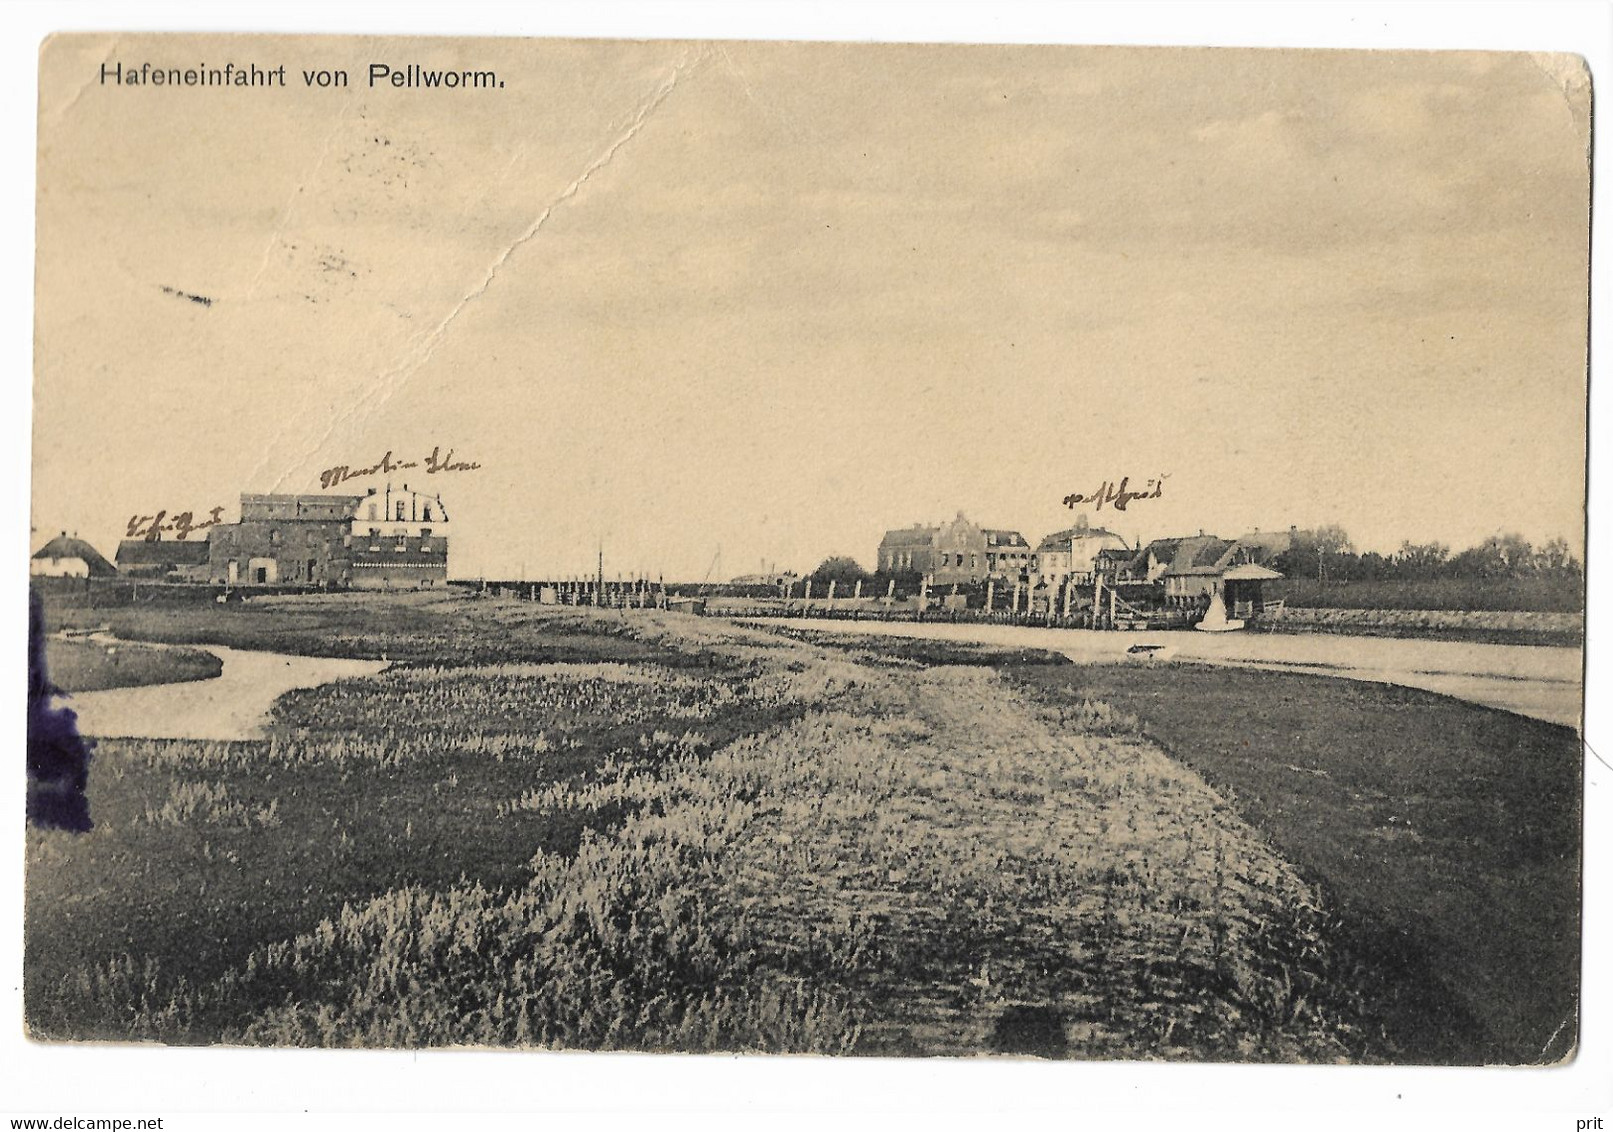 Hafeneinfahrt Von Pellworm Nordfriesland 1910 Real Photo Postcard Nice Pellworm Cancel. Publ Martin Edlefsen Pellworm - Nordfriesland